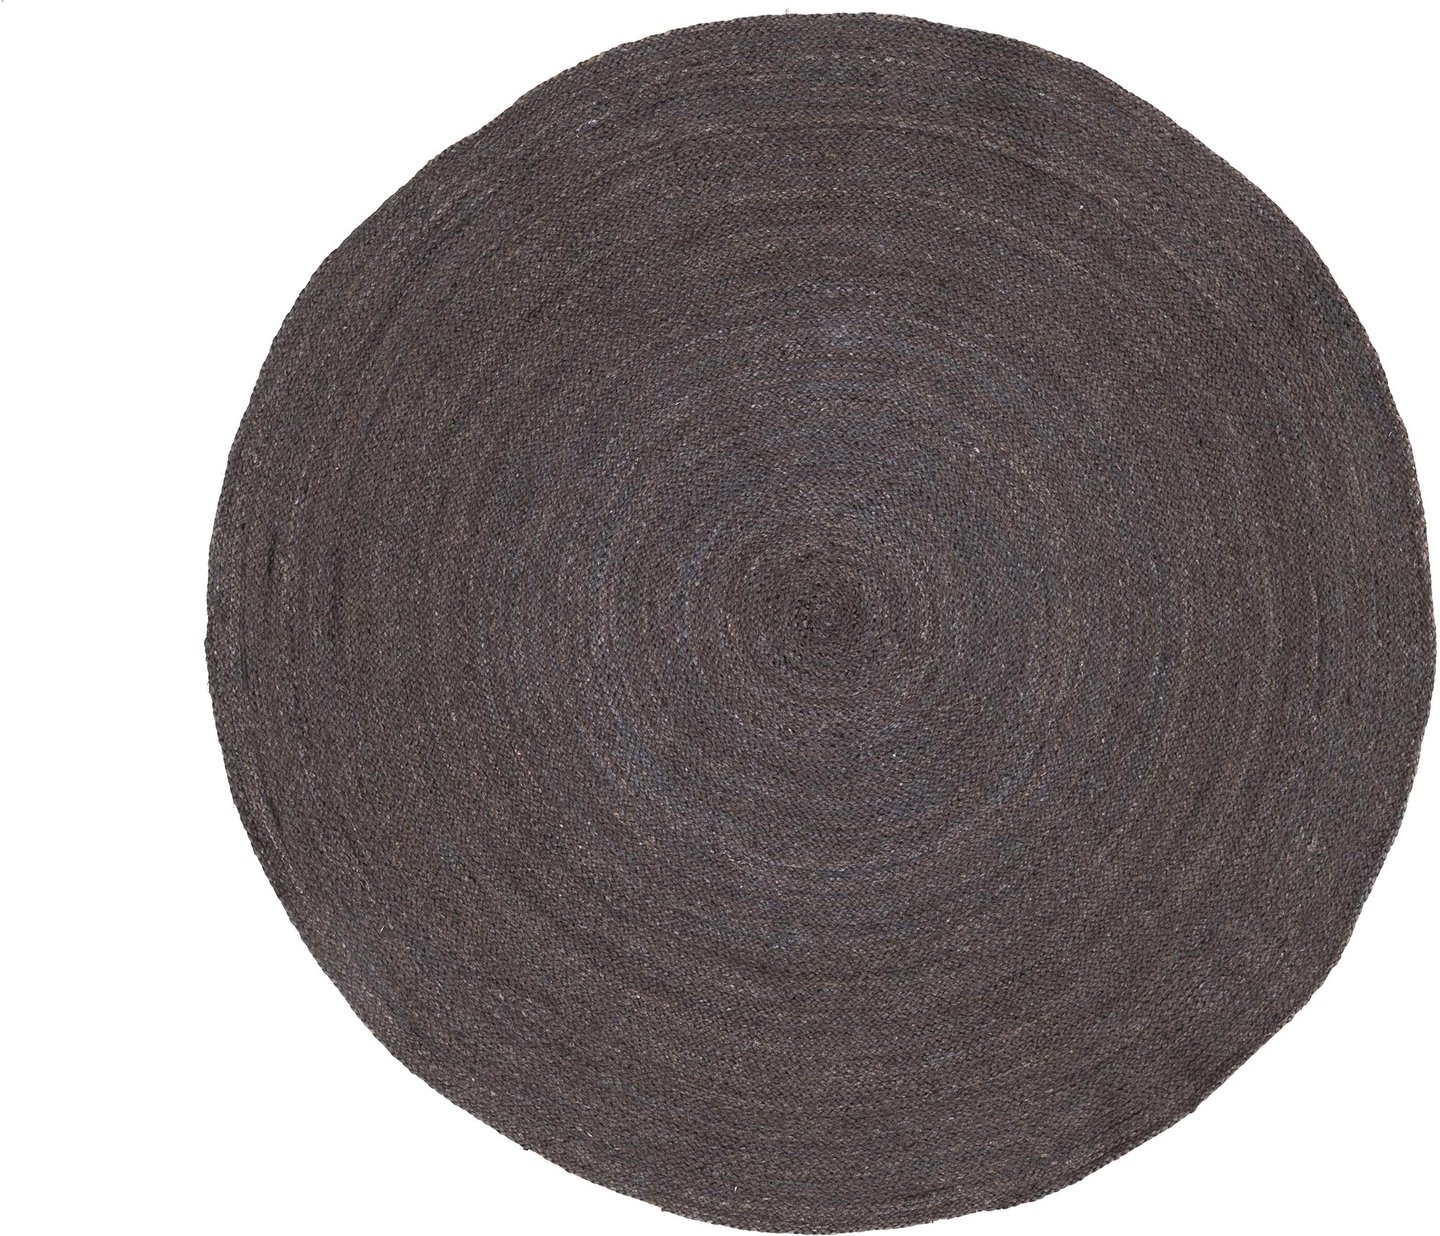 FanniK Rauha matto pyöreä ⌀ 100 cm, tumman harmaa / hiili